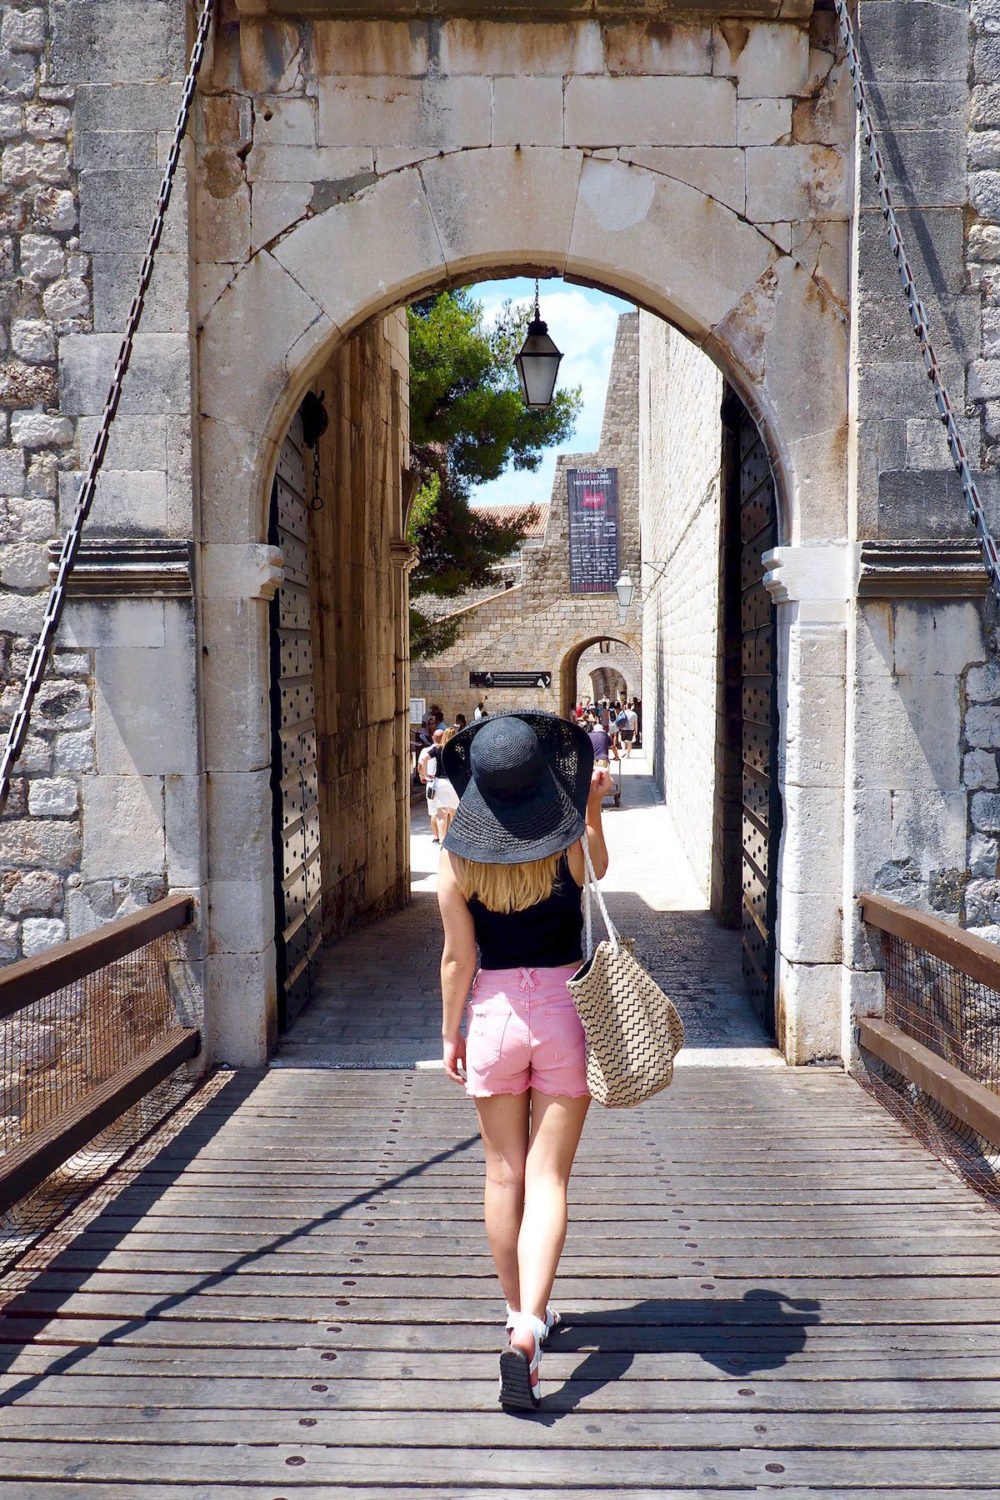 Ploce Gate in Dubrovnik